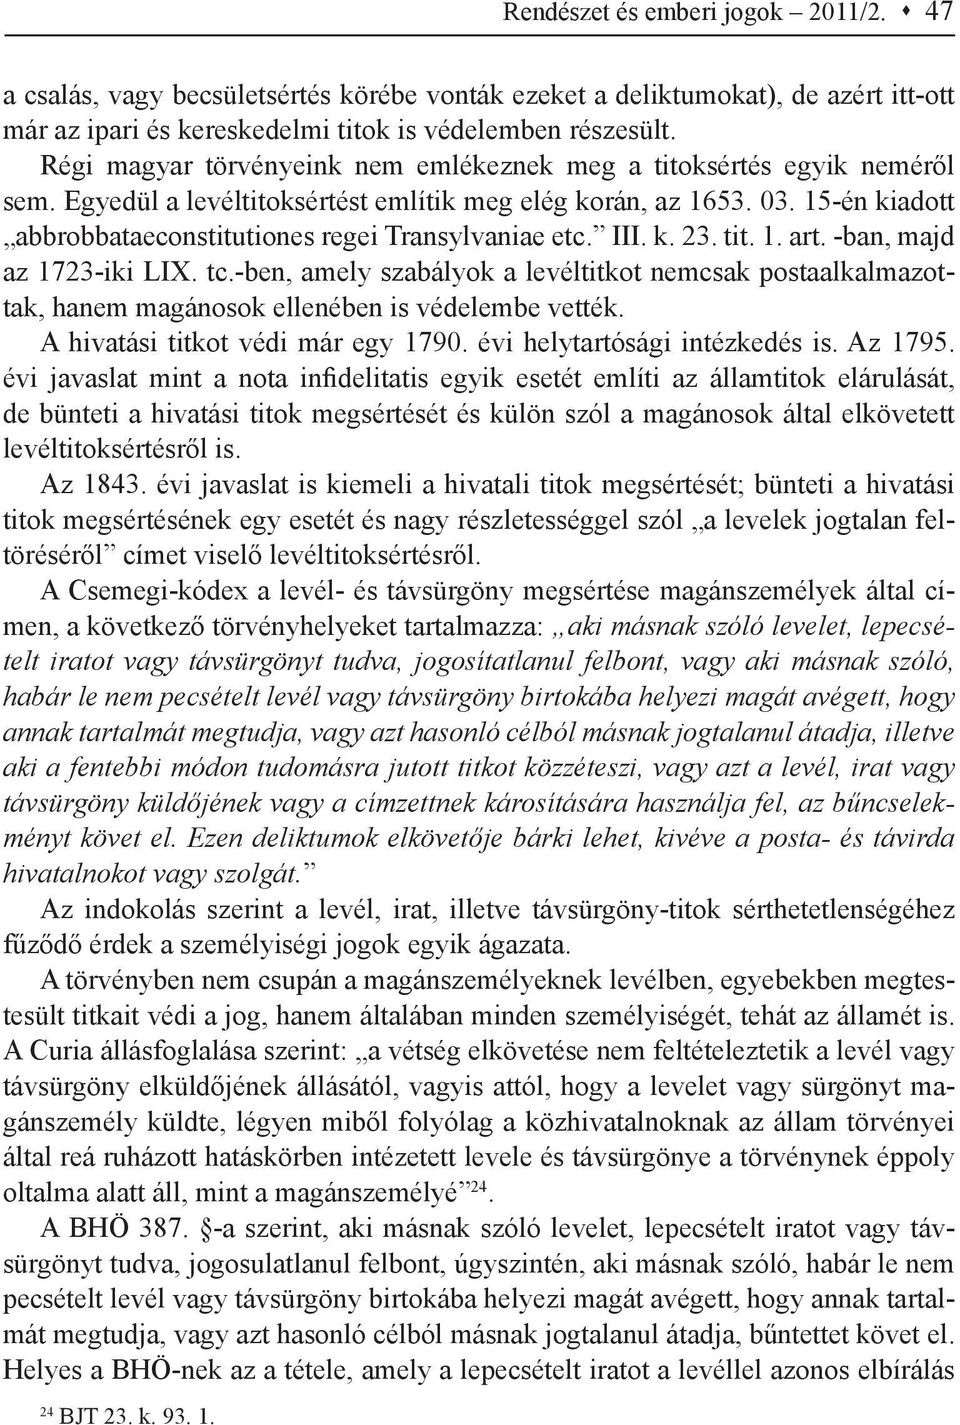 15-én kiadott abbrobbataeconstitutiones regei Transylvaniae etc. III. k. 23. tit. 1. art. -ban, majd az 1723-iki LIX. tc.